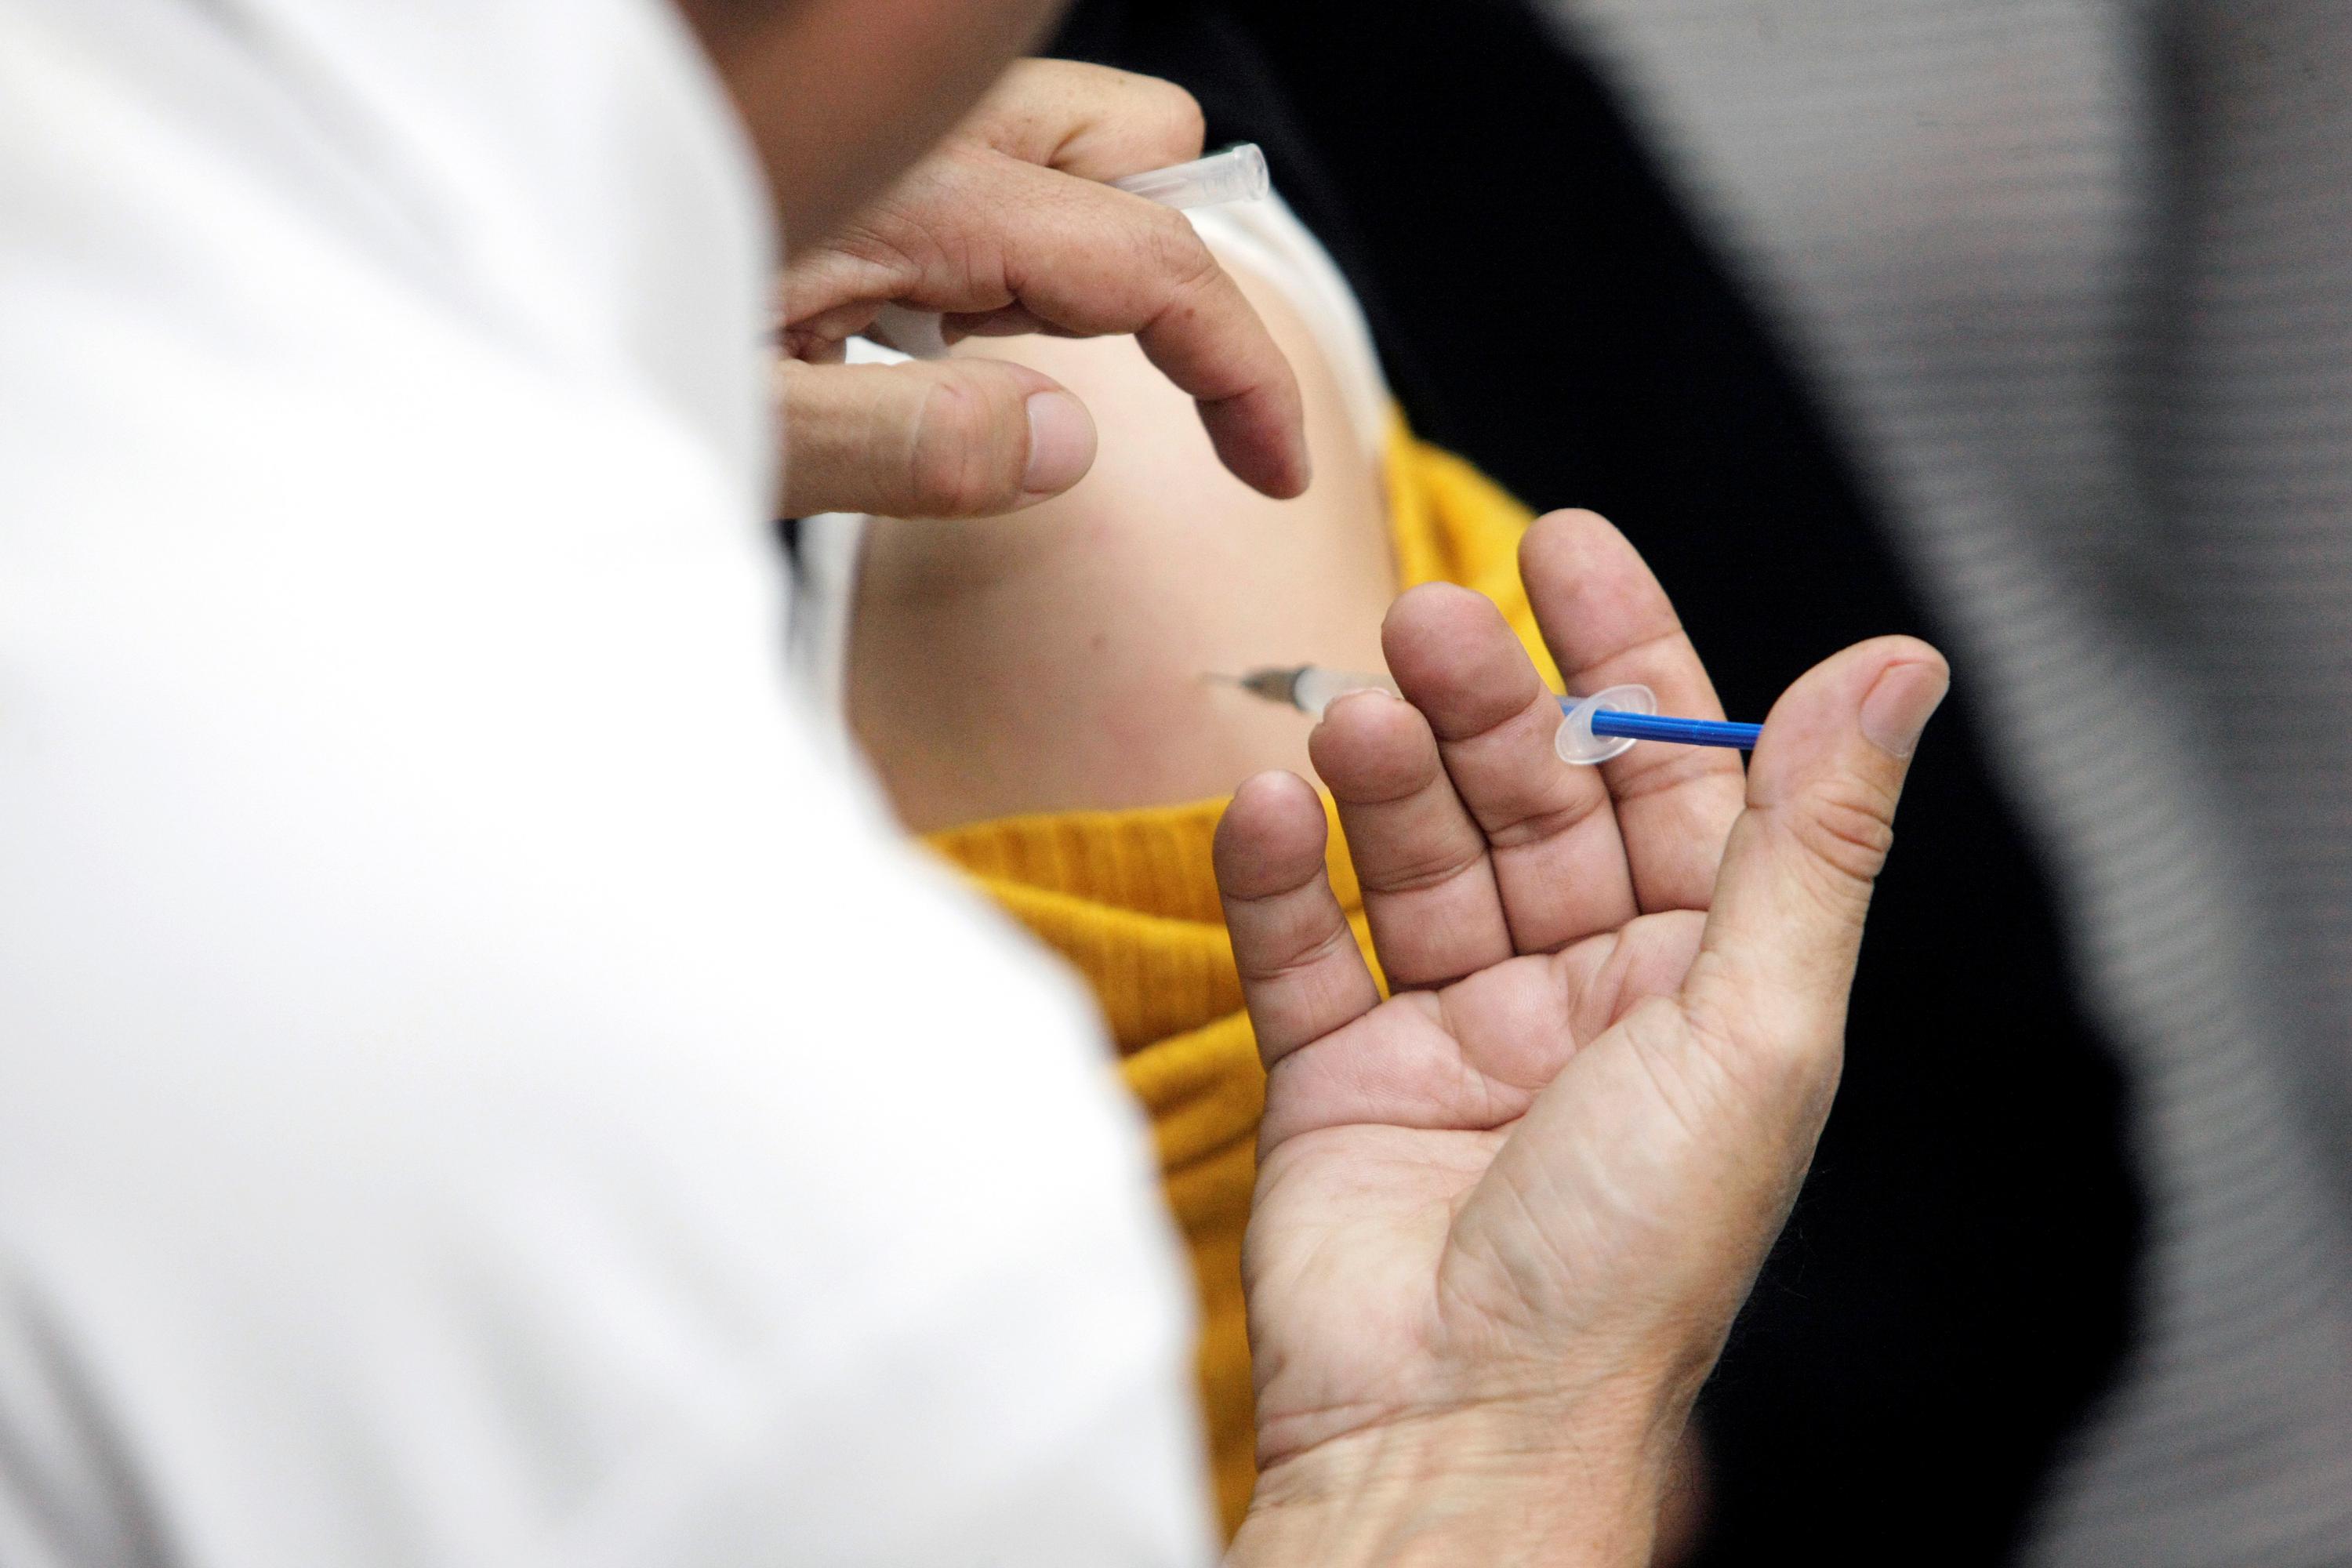  Mano de un médico aplicando una vacuna en el brazo